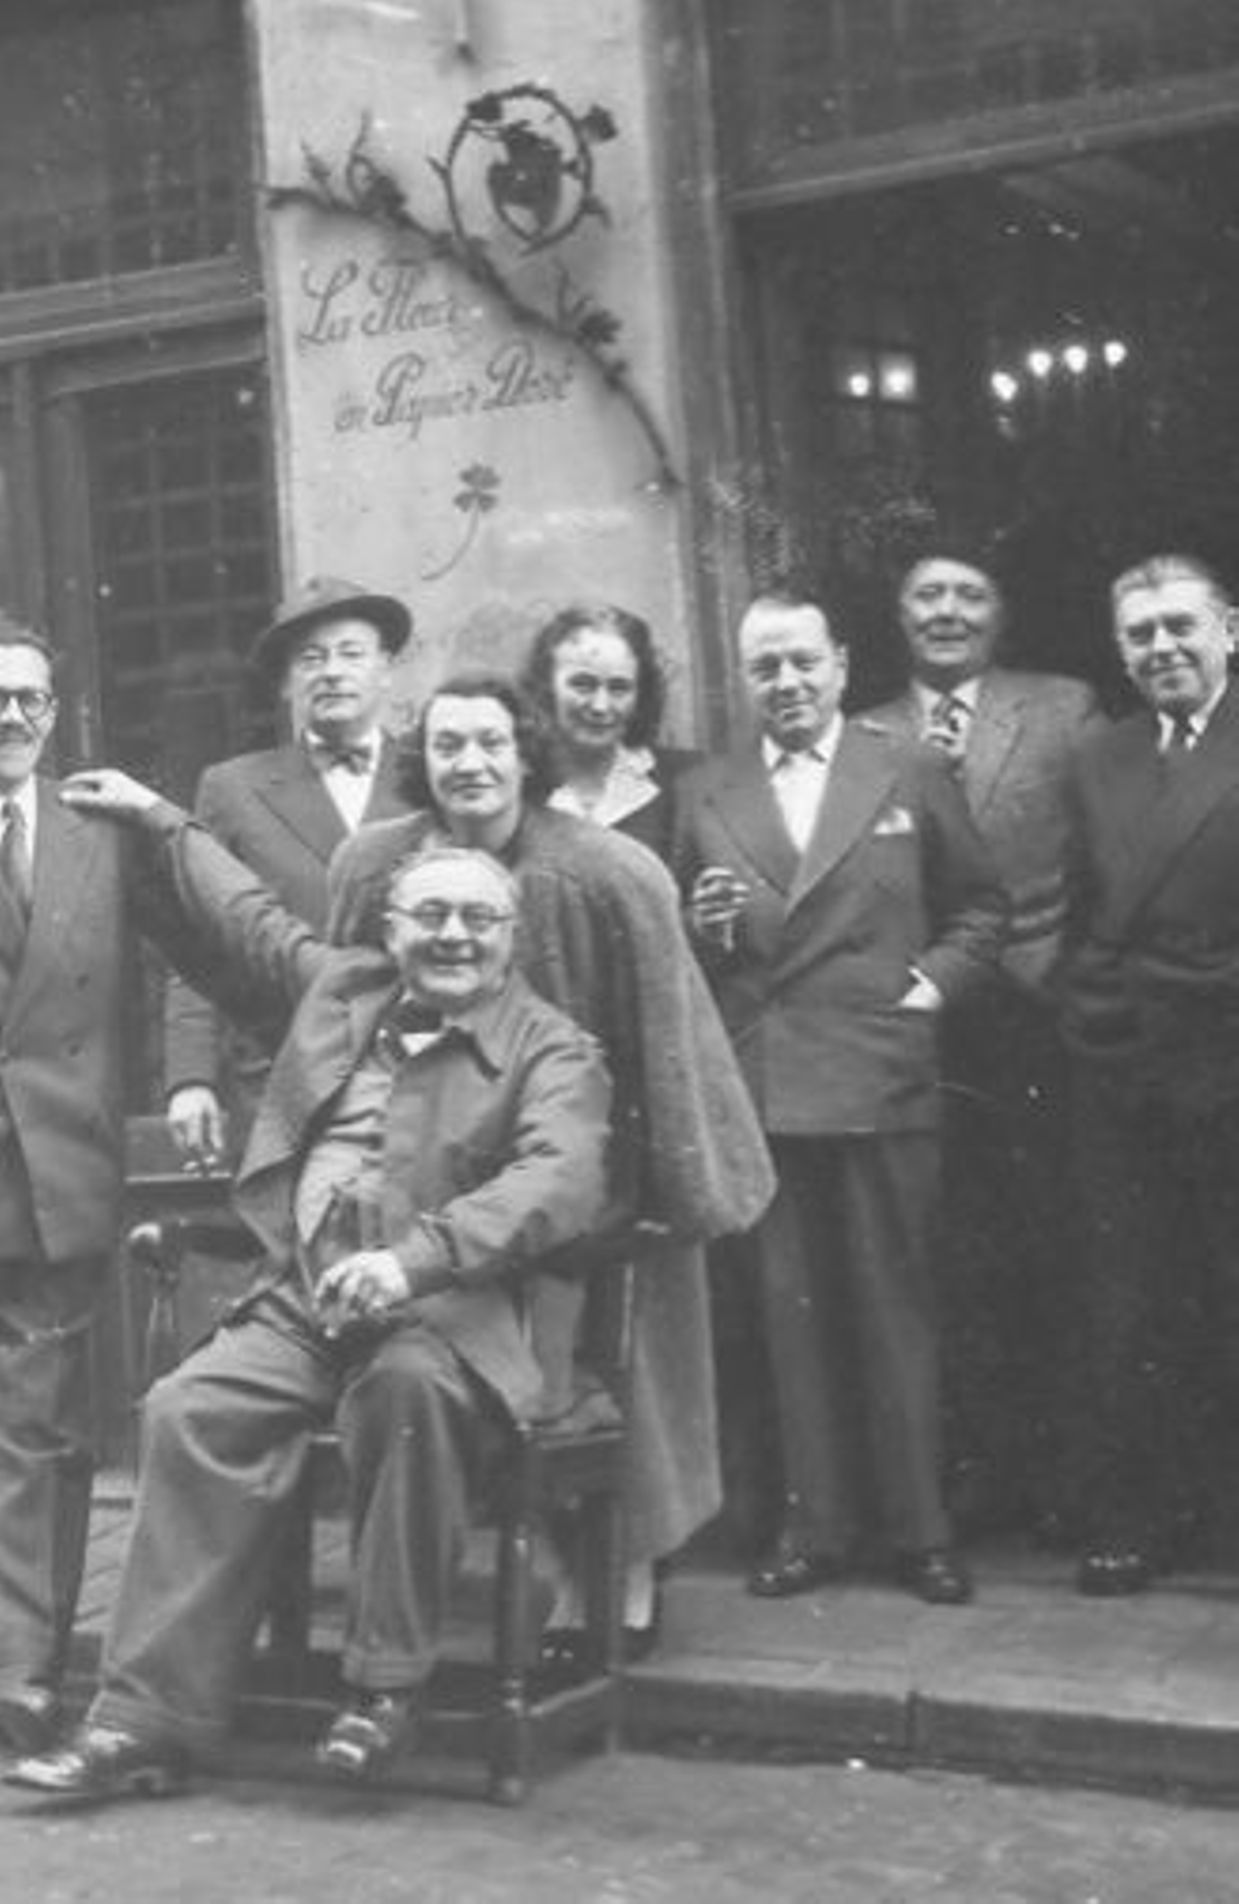 De gauche à droite : Marcel Mariën, Camille Goemans, Gérard Van Bruaene (assis), Irène Hamoir, Georgette Magritte, E.L.T. Mesens, Louis Scutenaire, René Magritte, Paul Colinet, à La Fleur en Papier Doré à Bruxelles